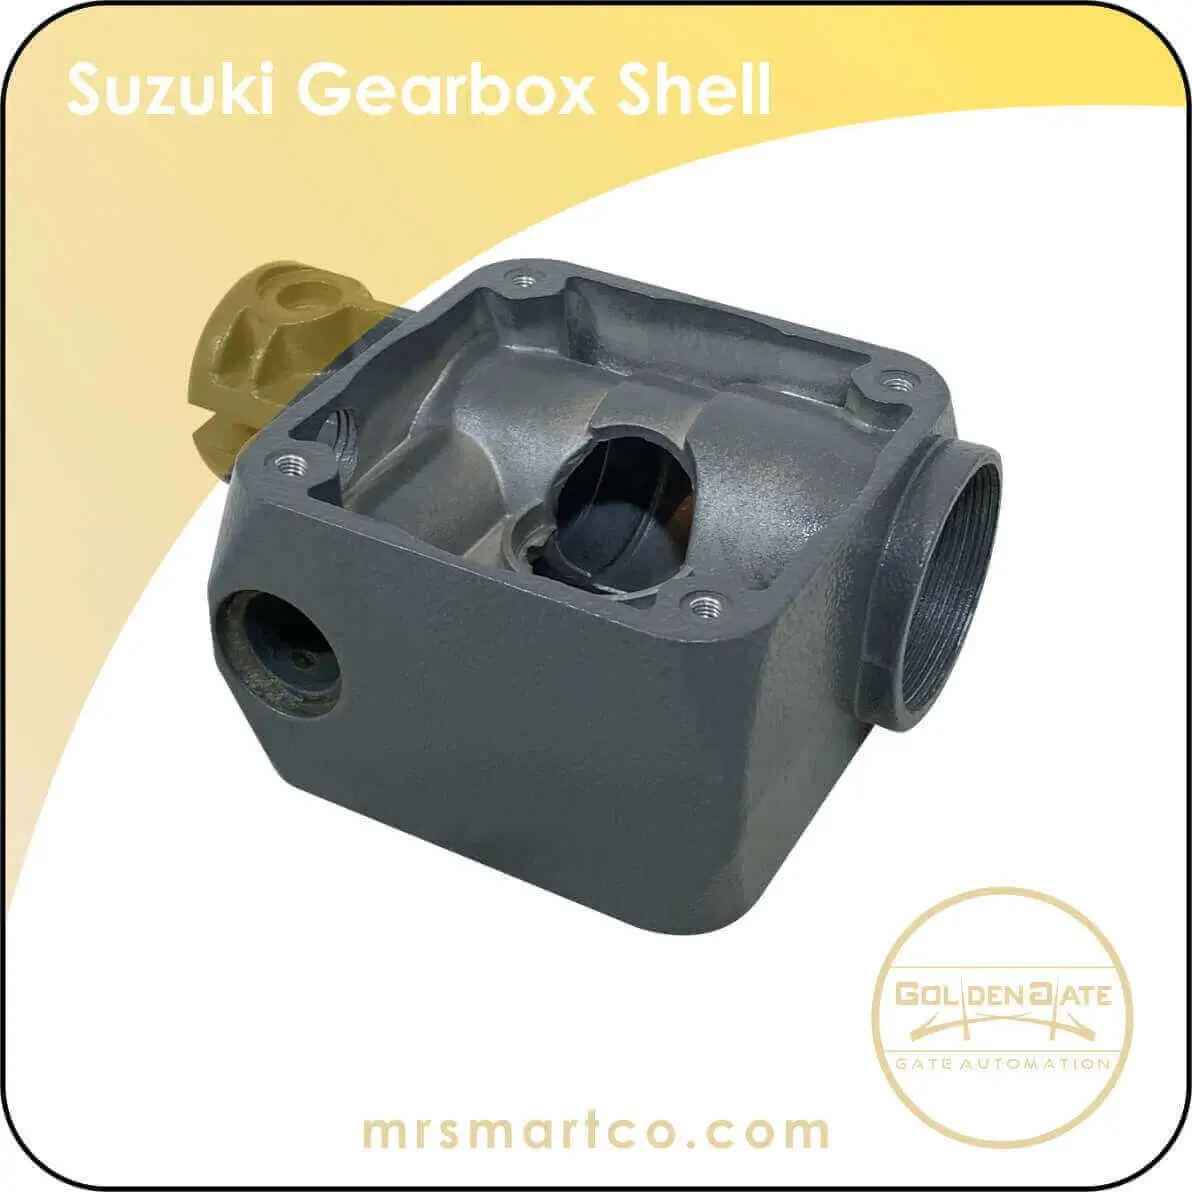 Suzuki gearbox Shell